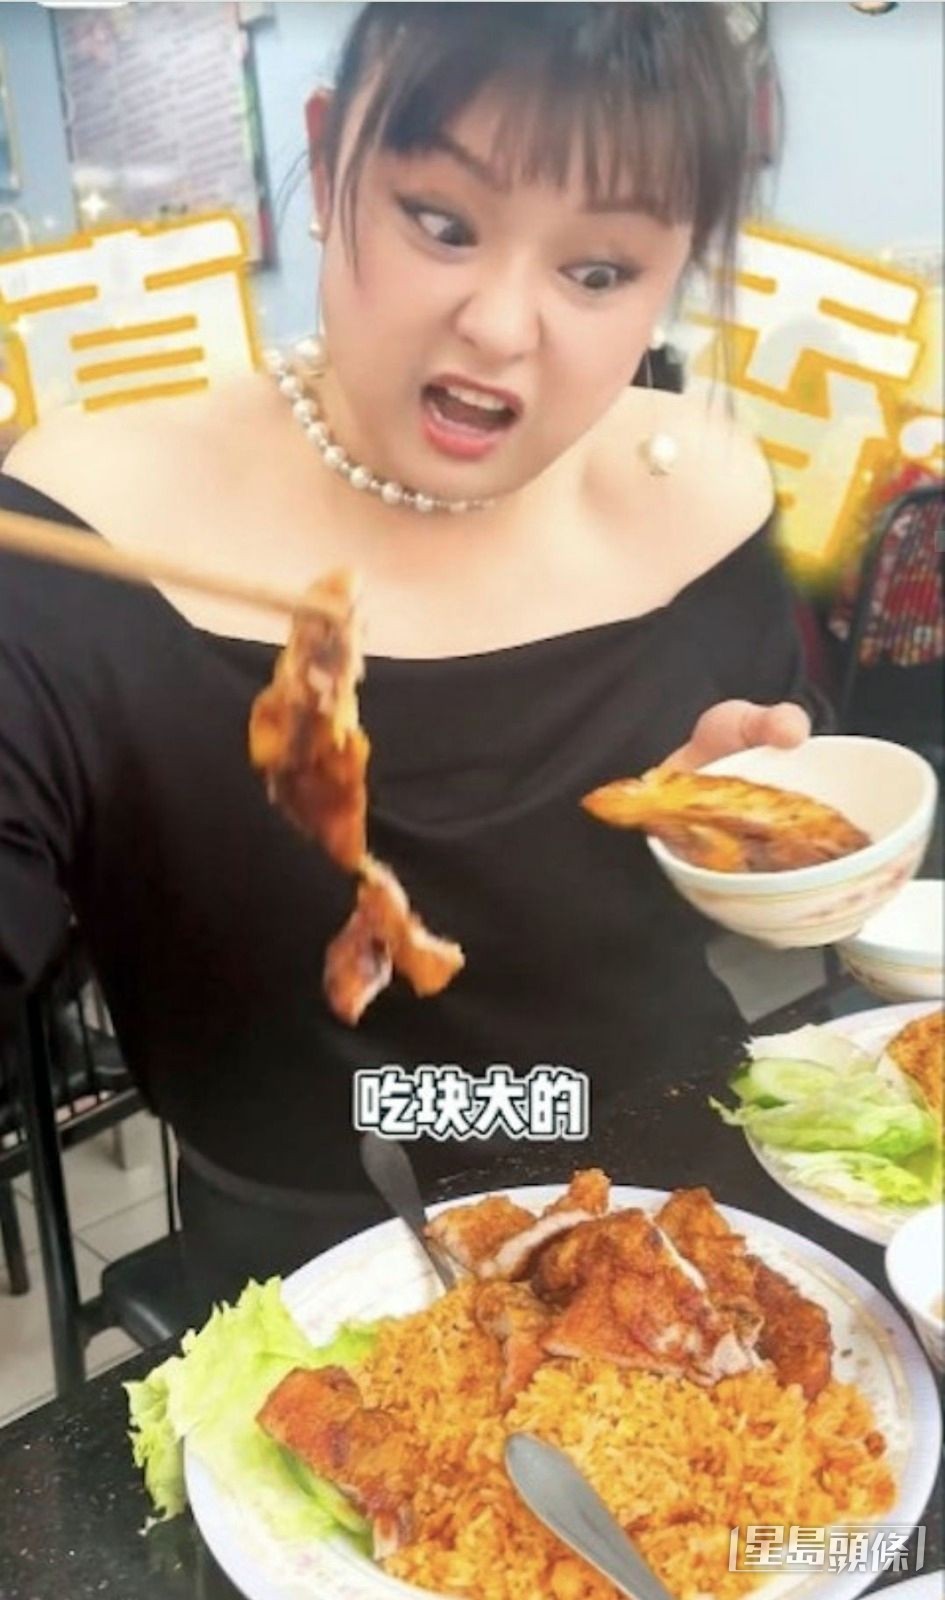 見到越南雞扒拼豬扒飯就胃口大開。